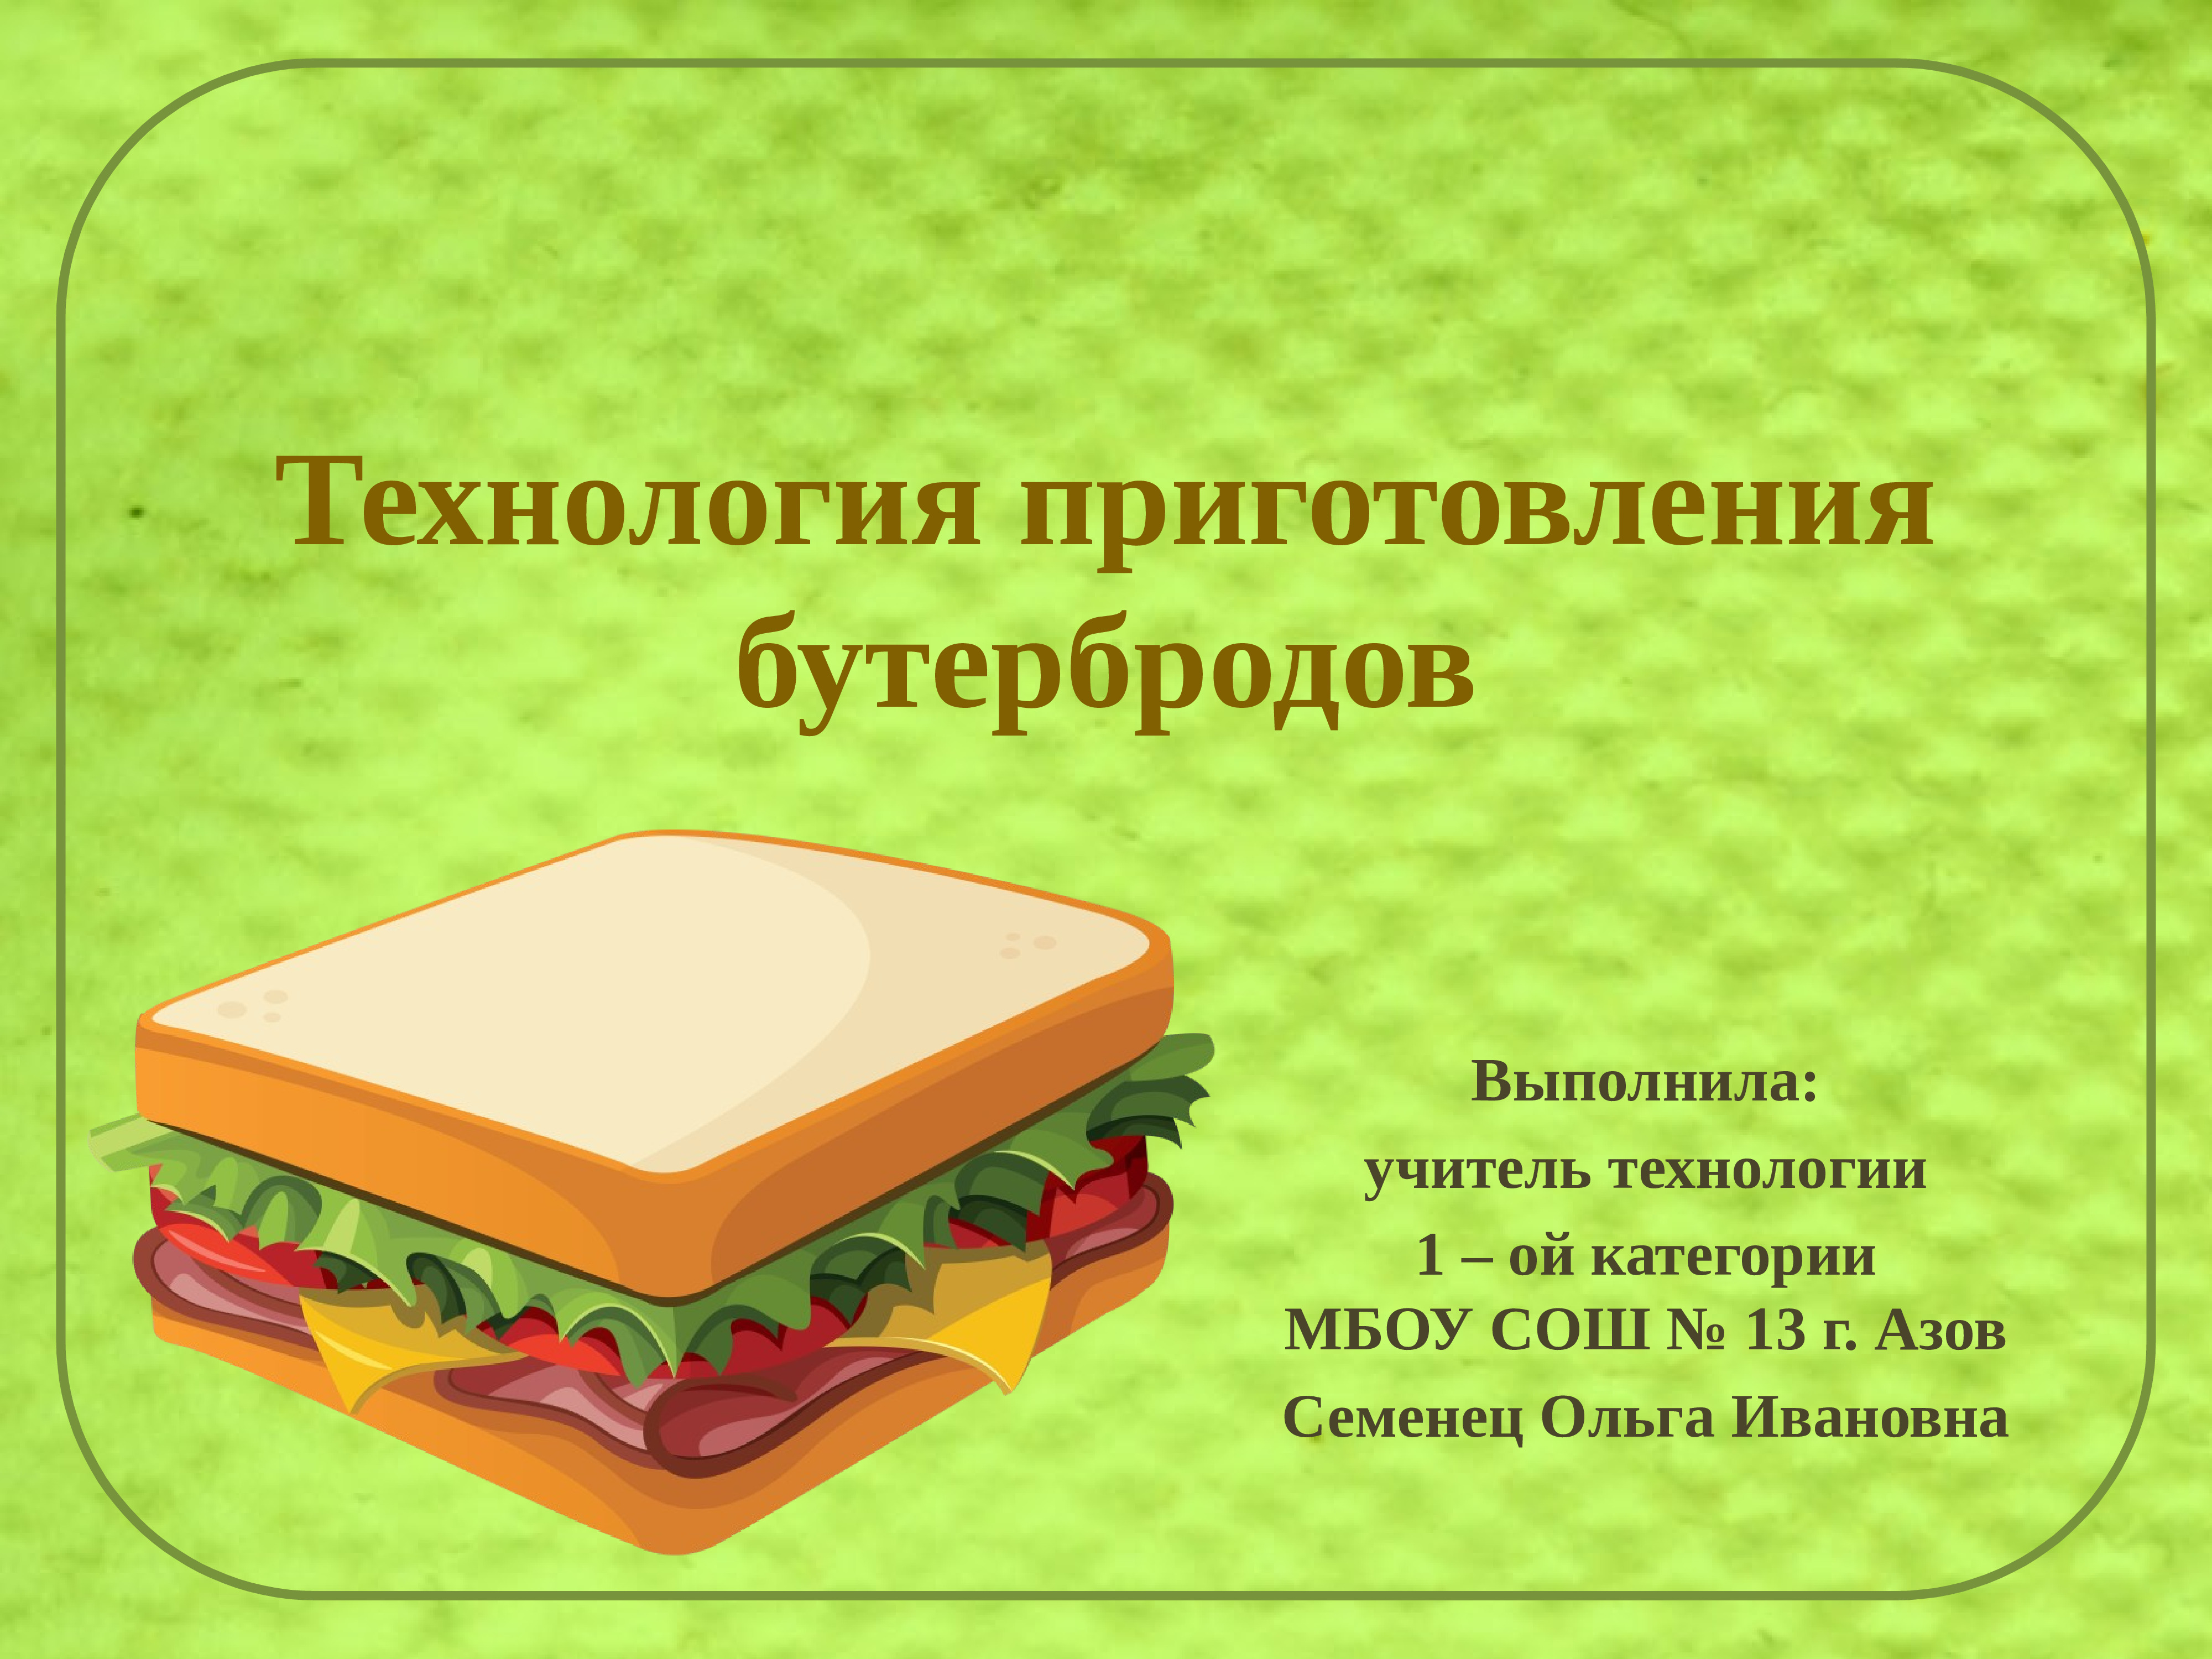 Описание сэндвича. Технология приготовления бутербродов. Бутерброды на технологию. Техноголия поиготовления ьу. Бутерброды 5 класс технология.